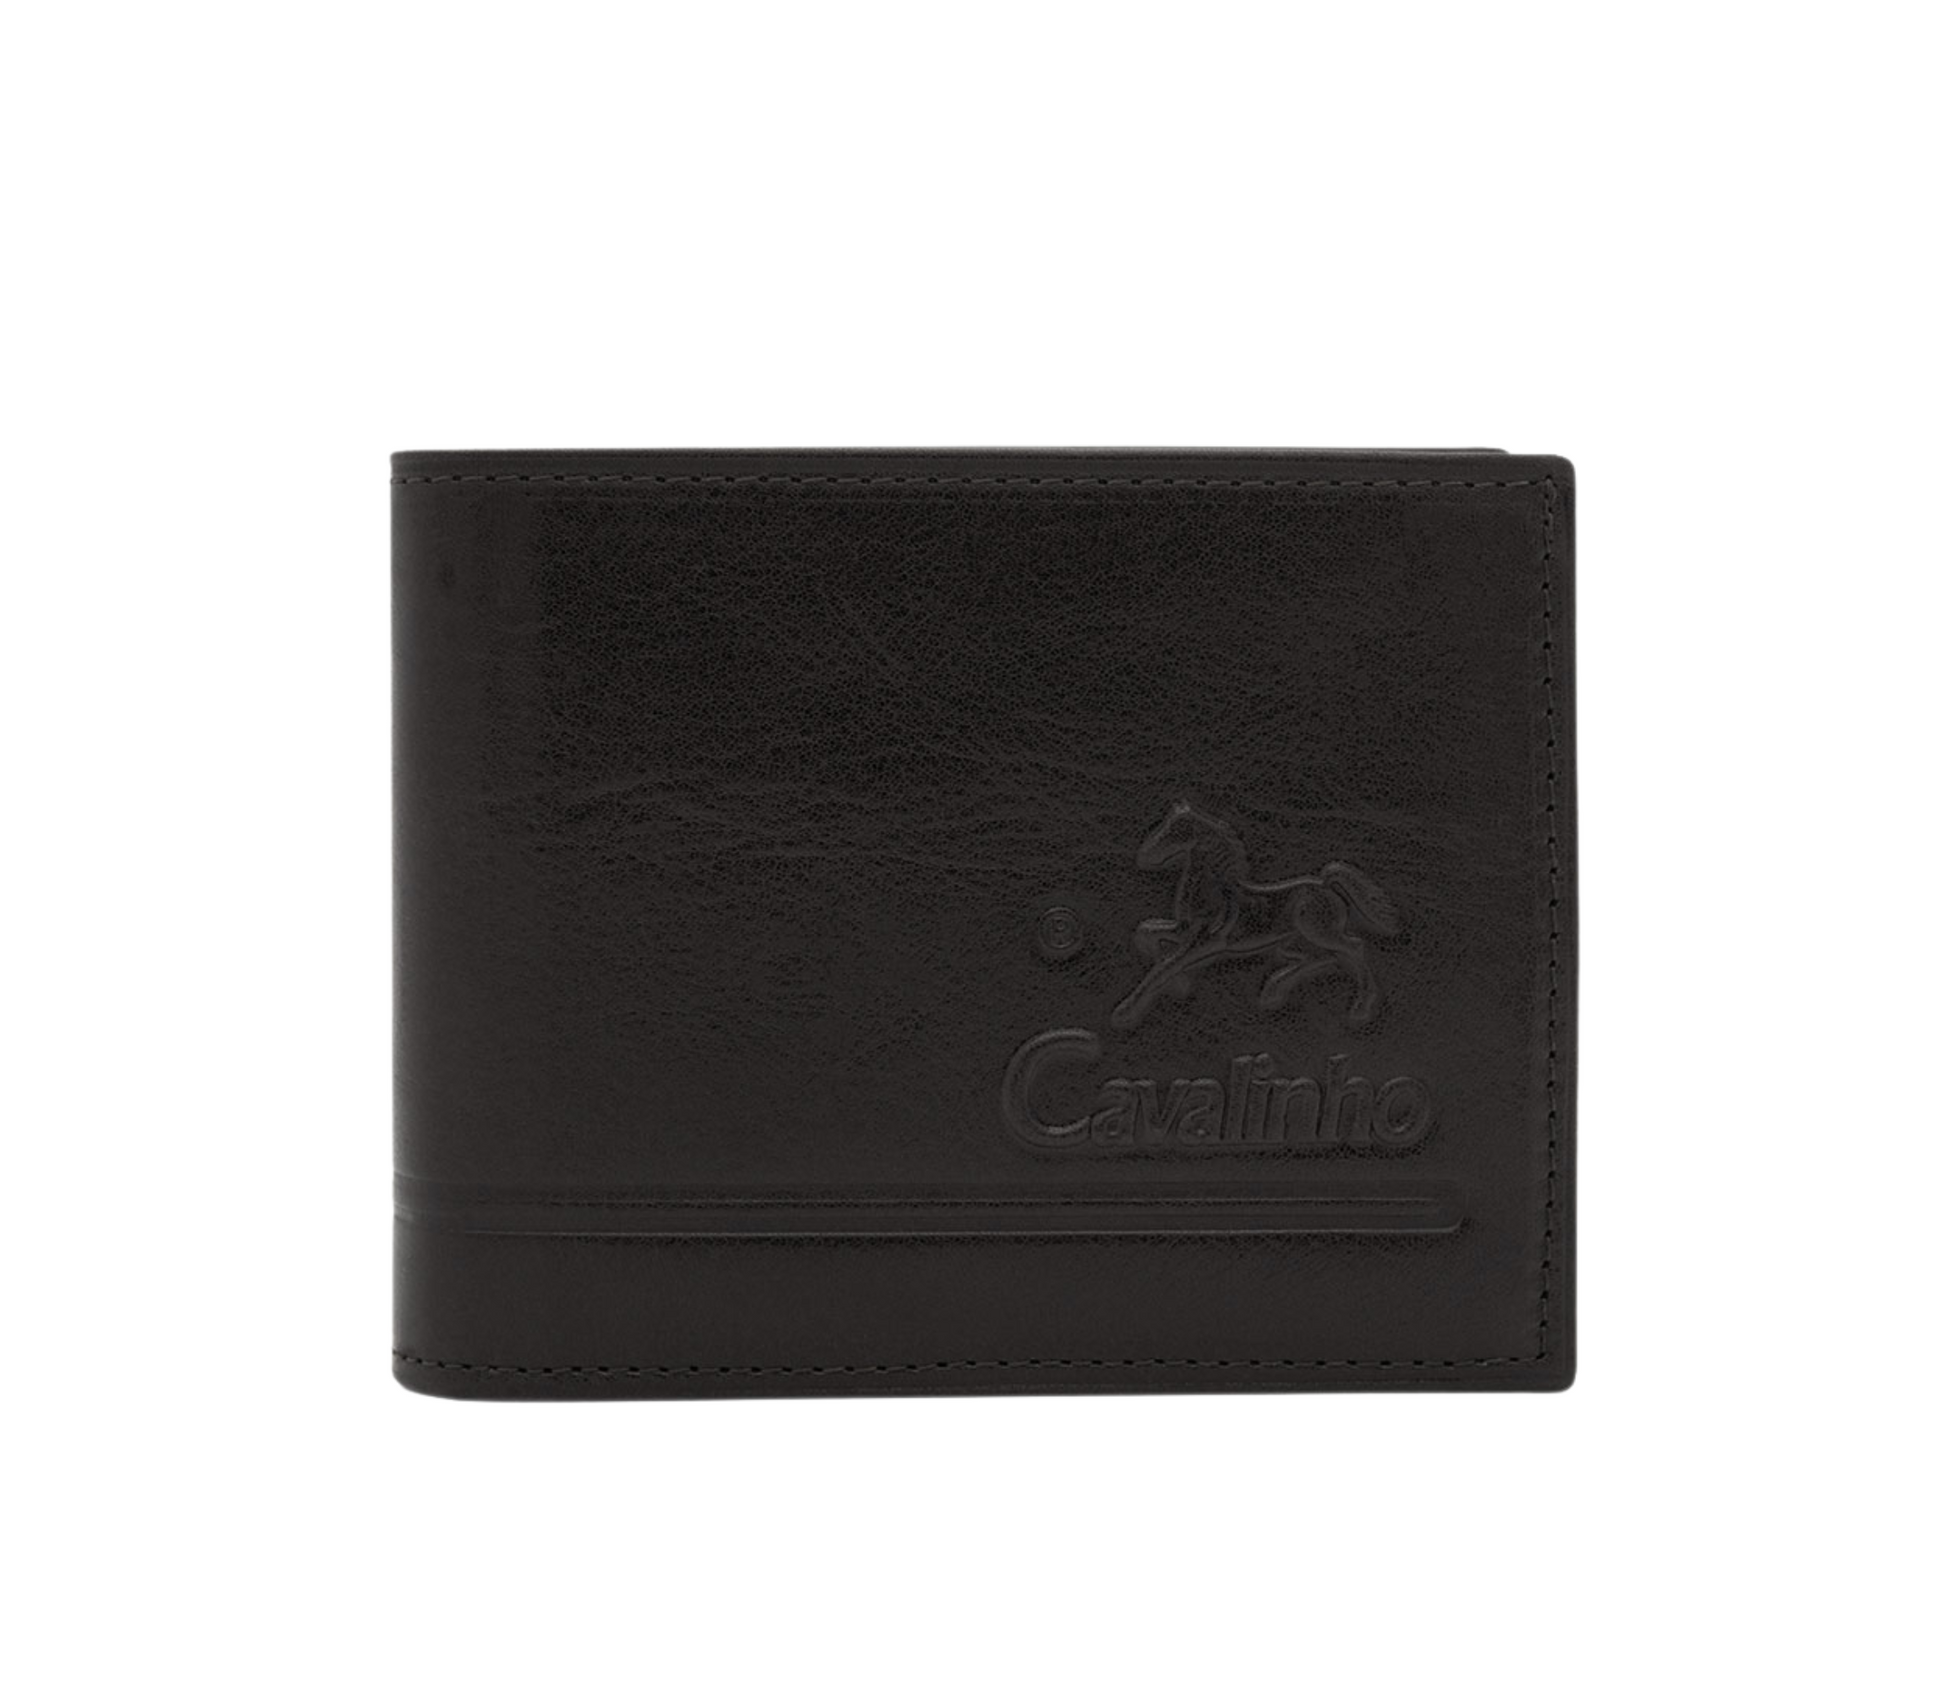 Cavalinho Men's Bifold Leather Wallet - Black - 28610512.01_P01